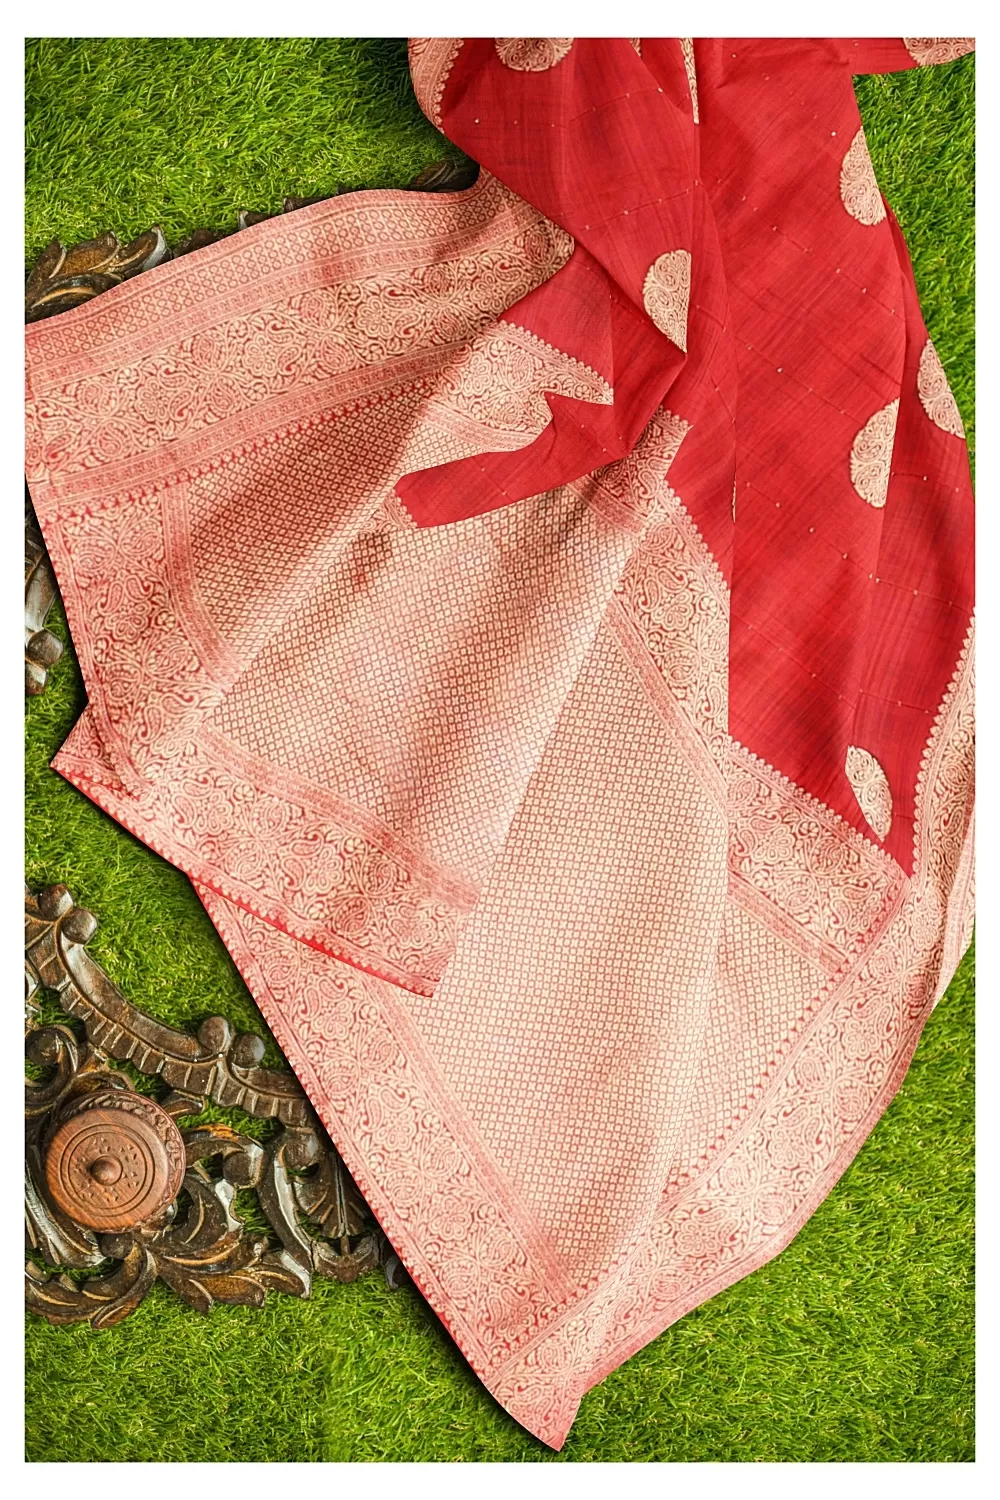 Red Colour Soft Silk Saree